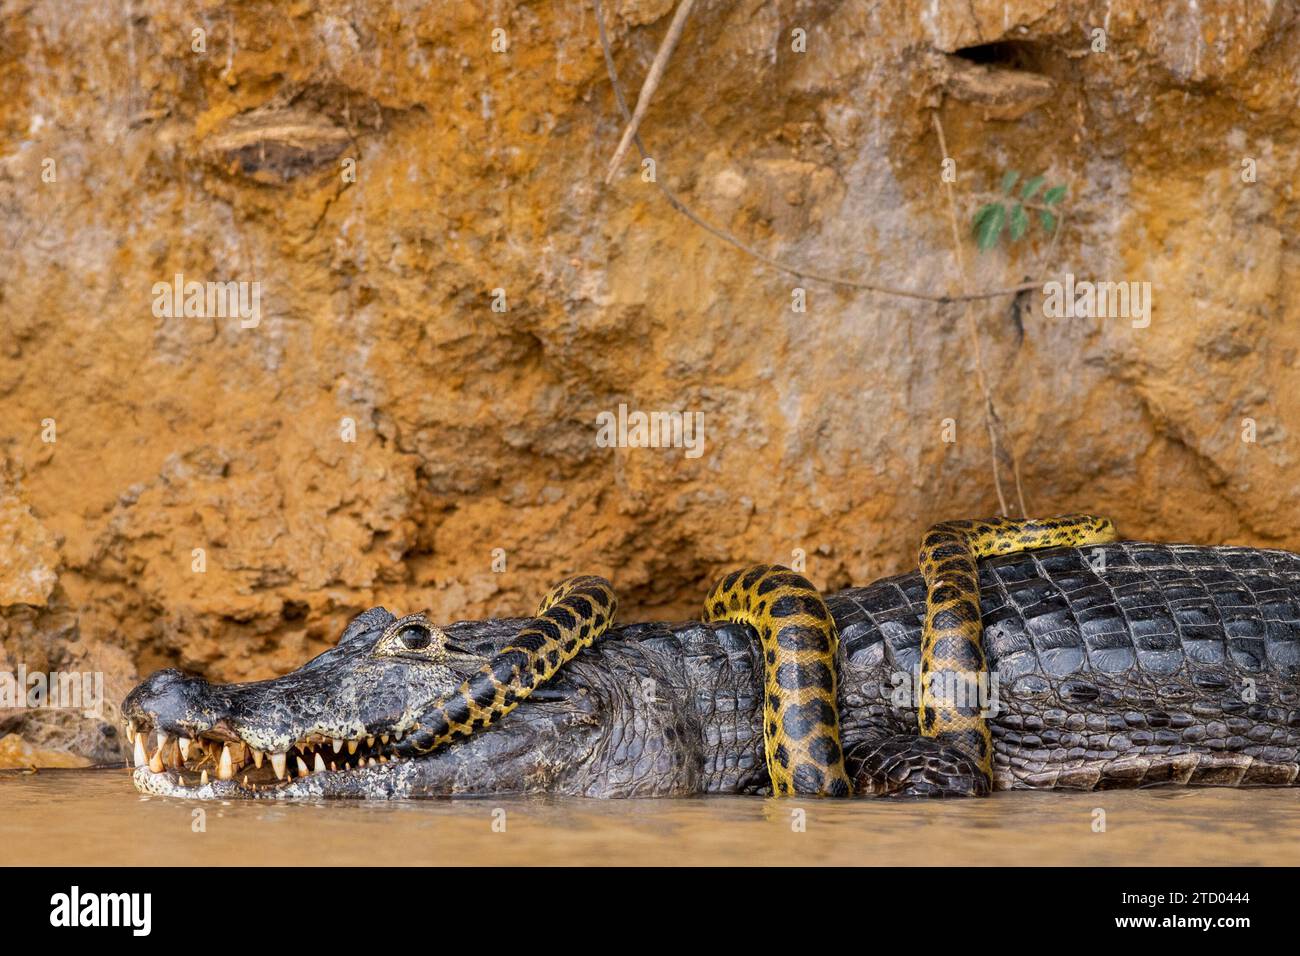 Wer sucht wem nach? BRASILIENS SPANNENDE Bilder zeigen einen Kaiman-Alligator, der eine gelbe Anakonda wie eine Krawatte trägt. Die 1,2 m lange Anaconda hat den überdeckten Stockfoto